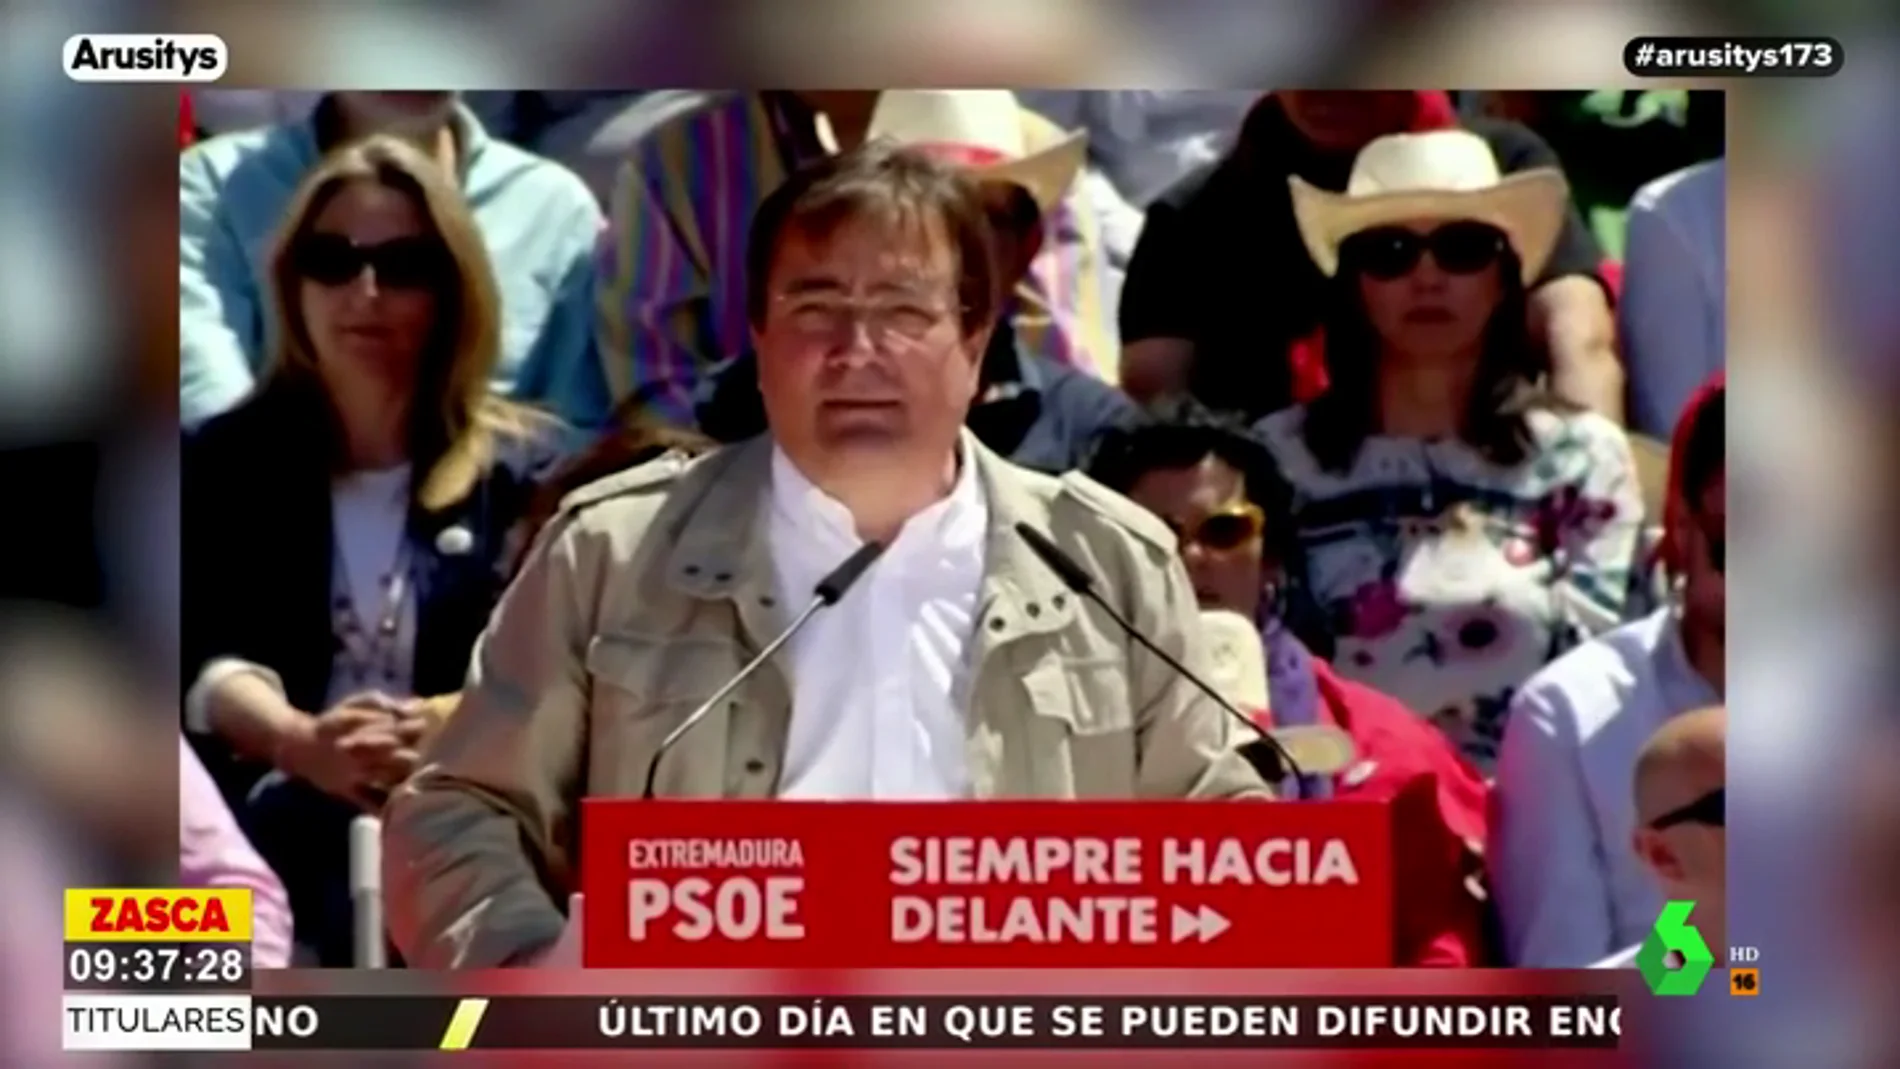 Fernández Vara (PSOE), sobre los dirigentes de Vox: "Estos machos de mierda siguen creyendo que son vuestros dueños"